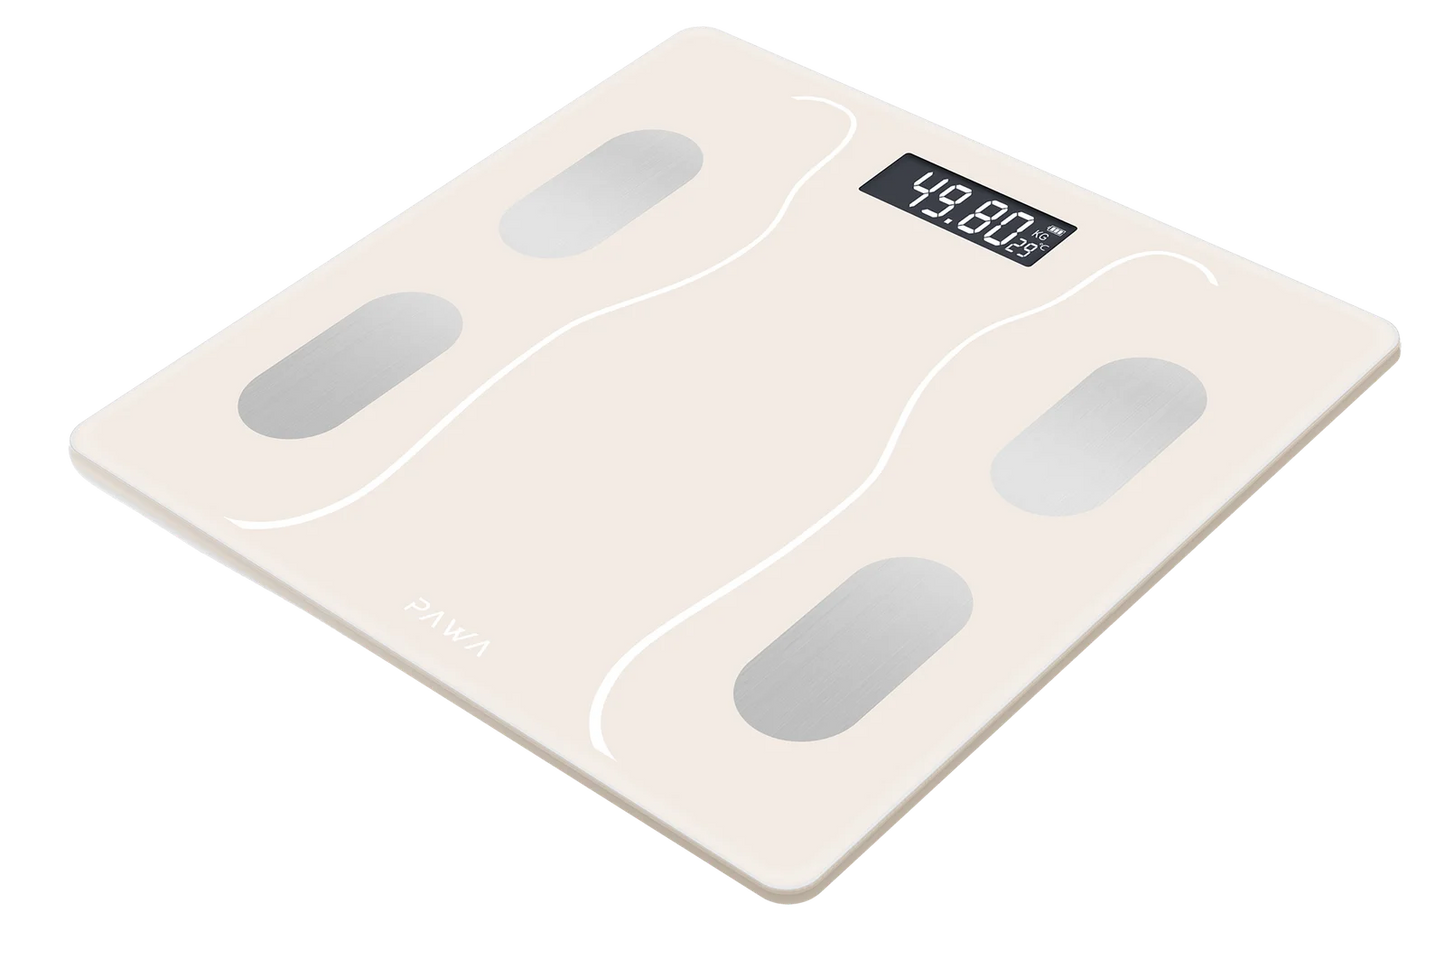 Pawa Smart Body Scale with Body Analysis App - Beige